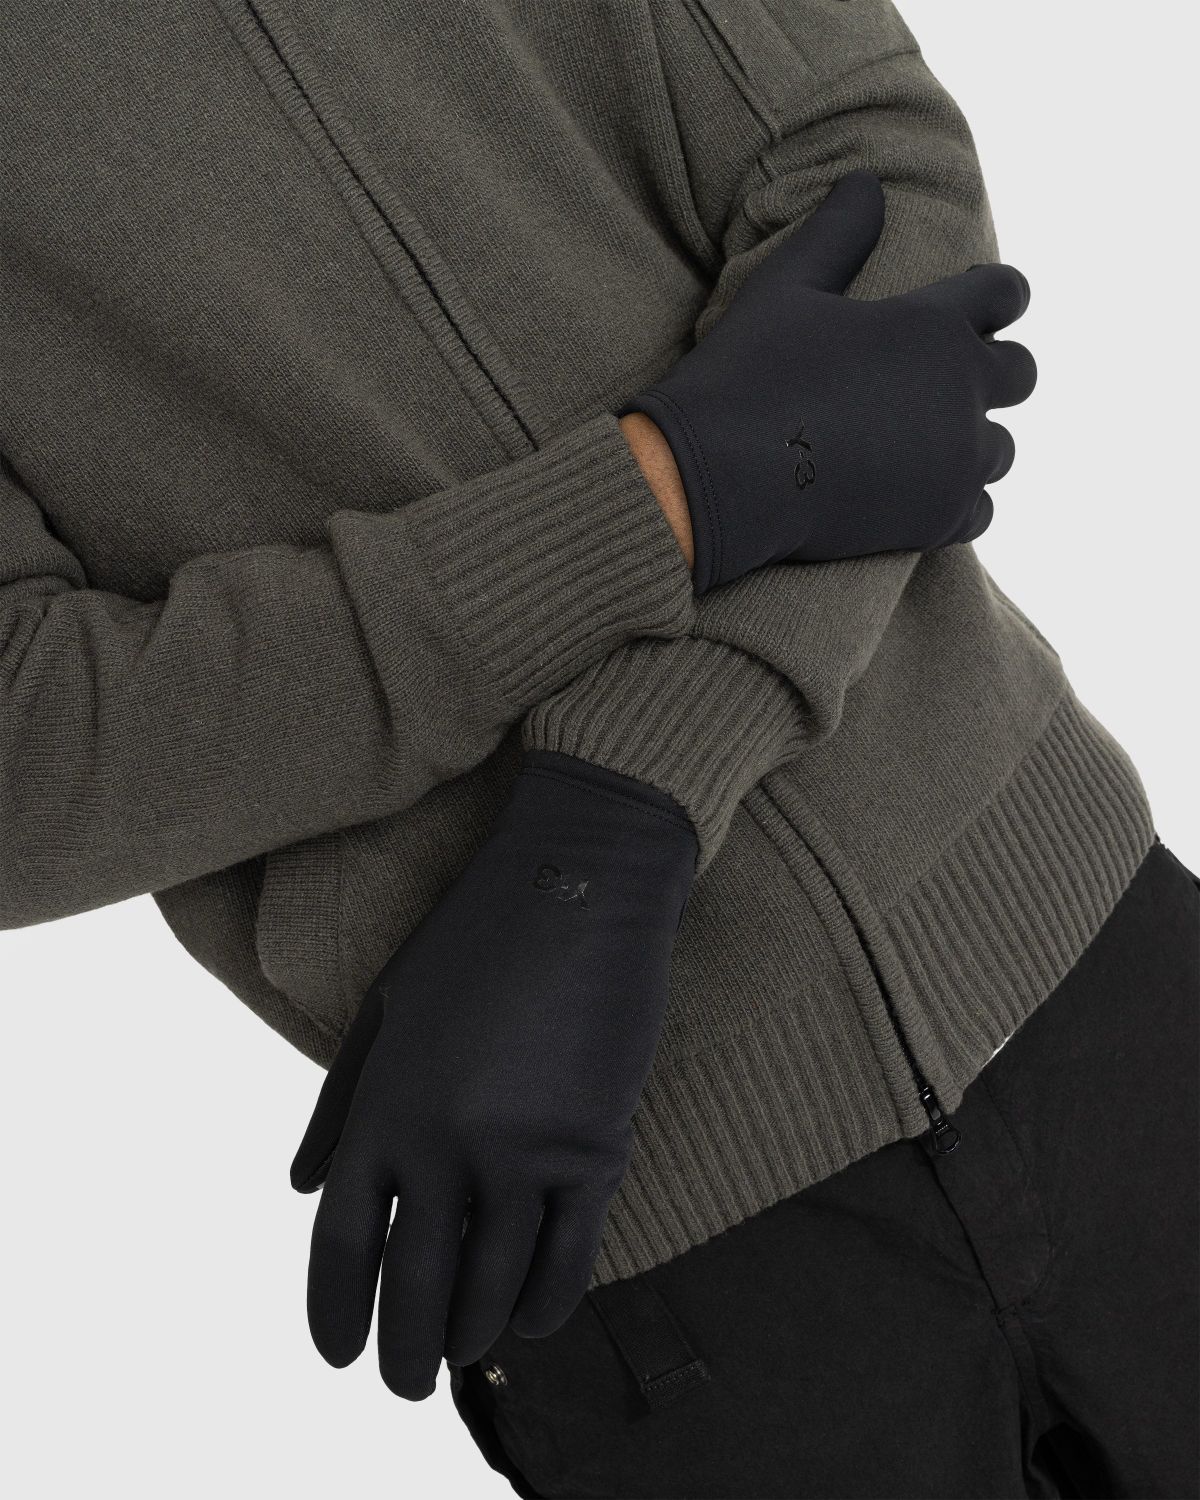 Y-3 – GTX Gloves Black